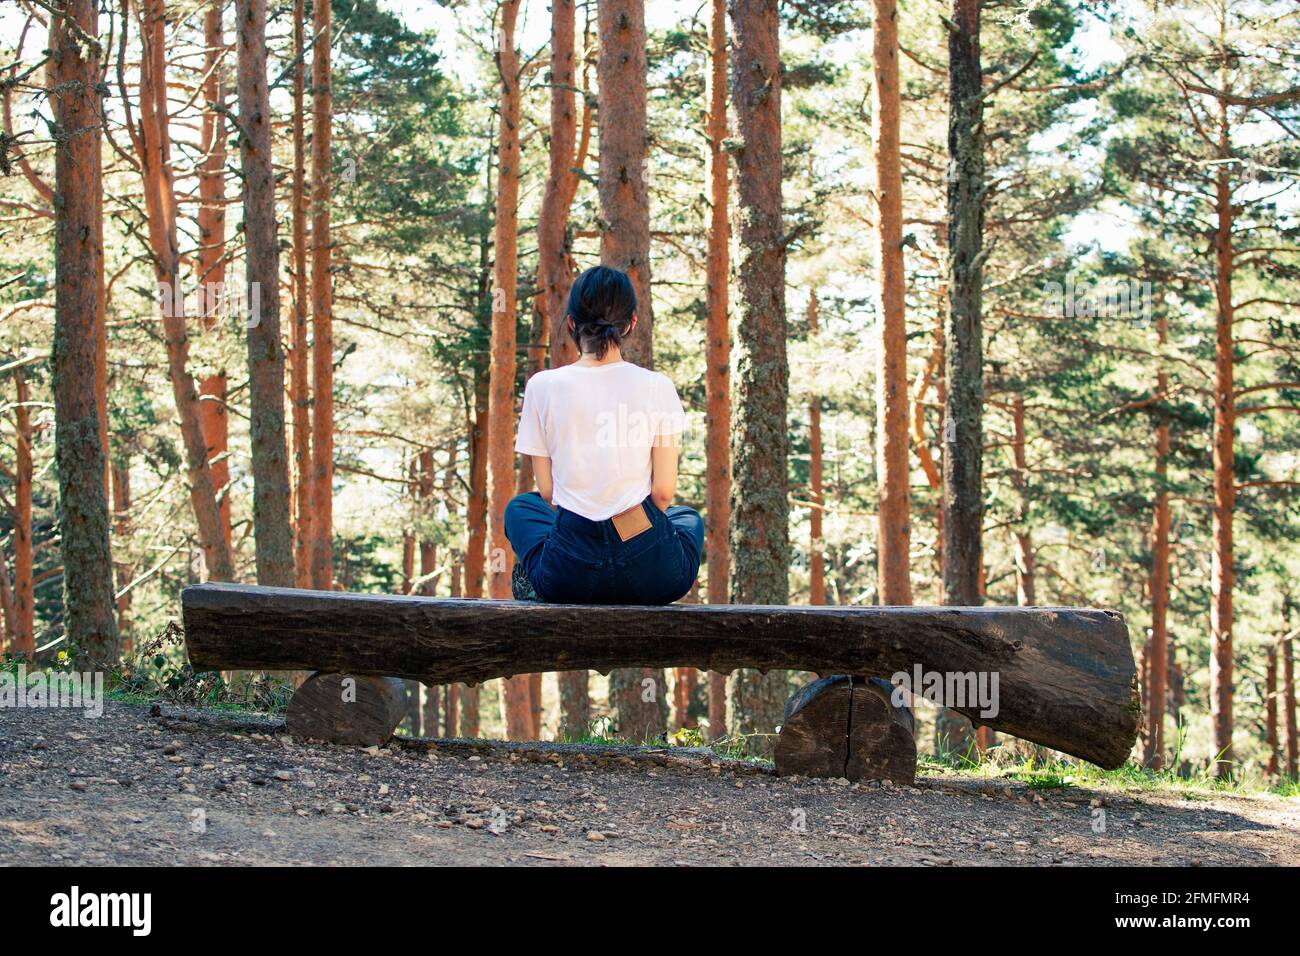 Una donna seduta su una panchina nel mezzo di una foresta. Fotografia orizzontale. Foto Stock